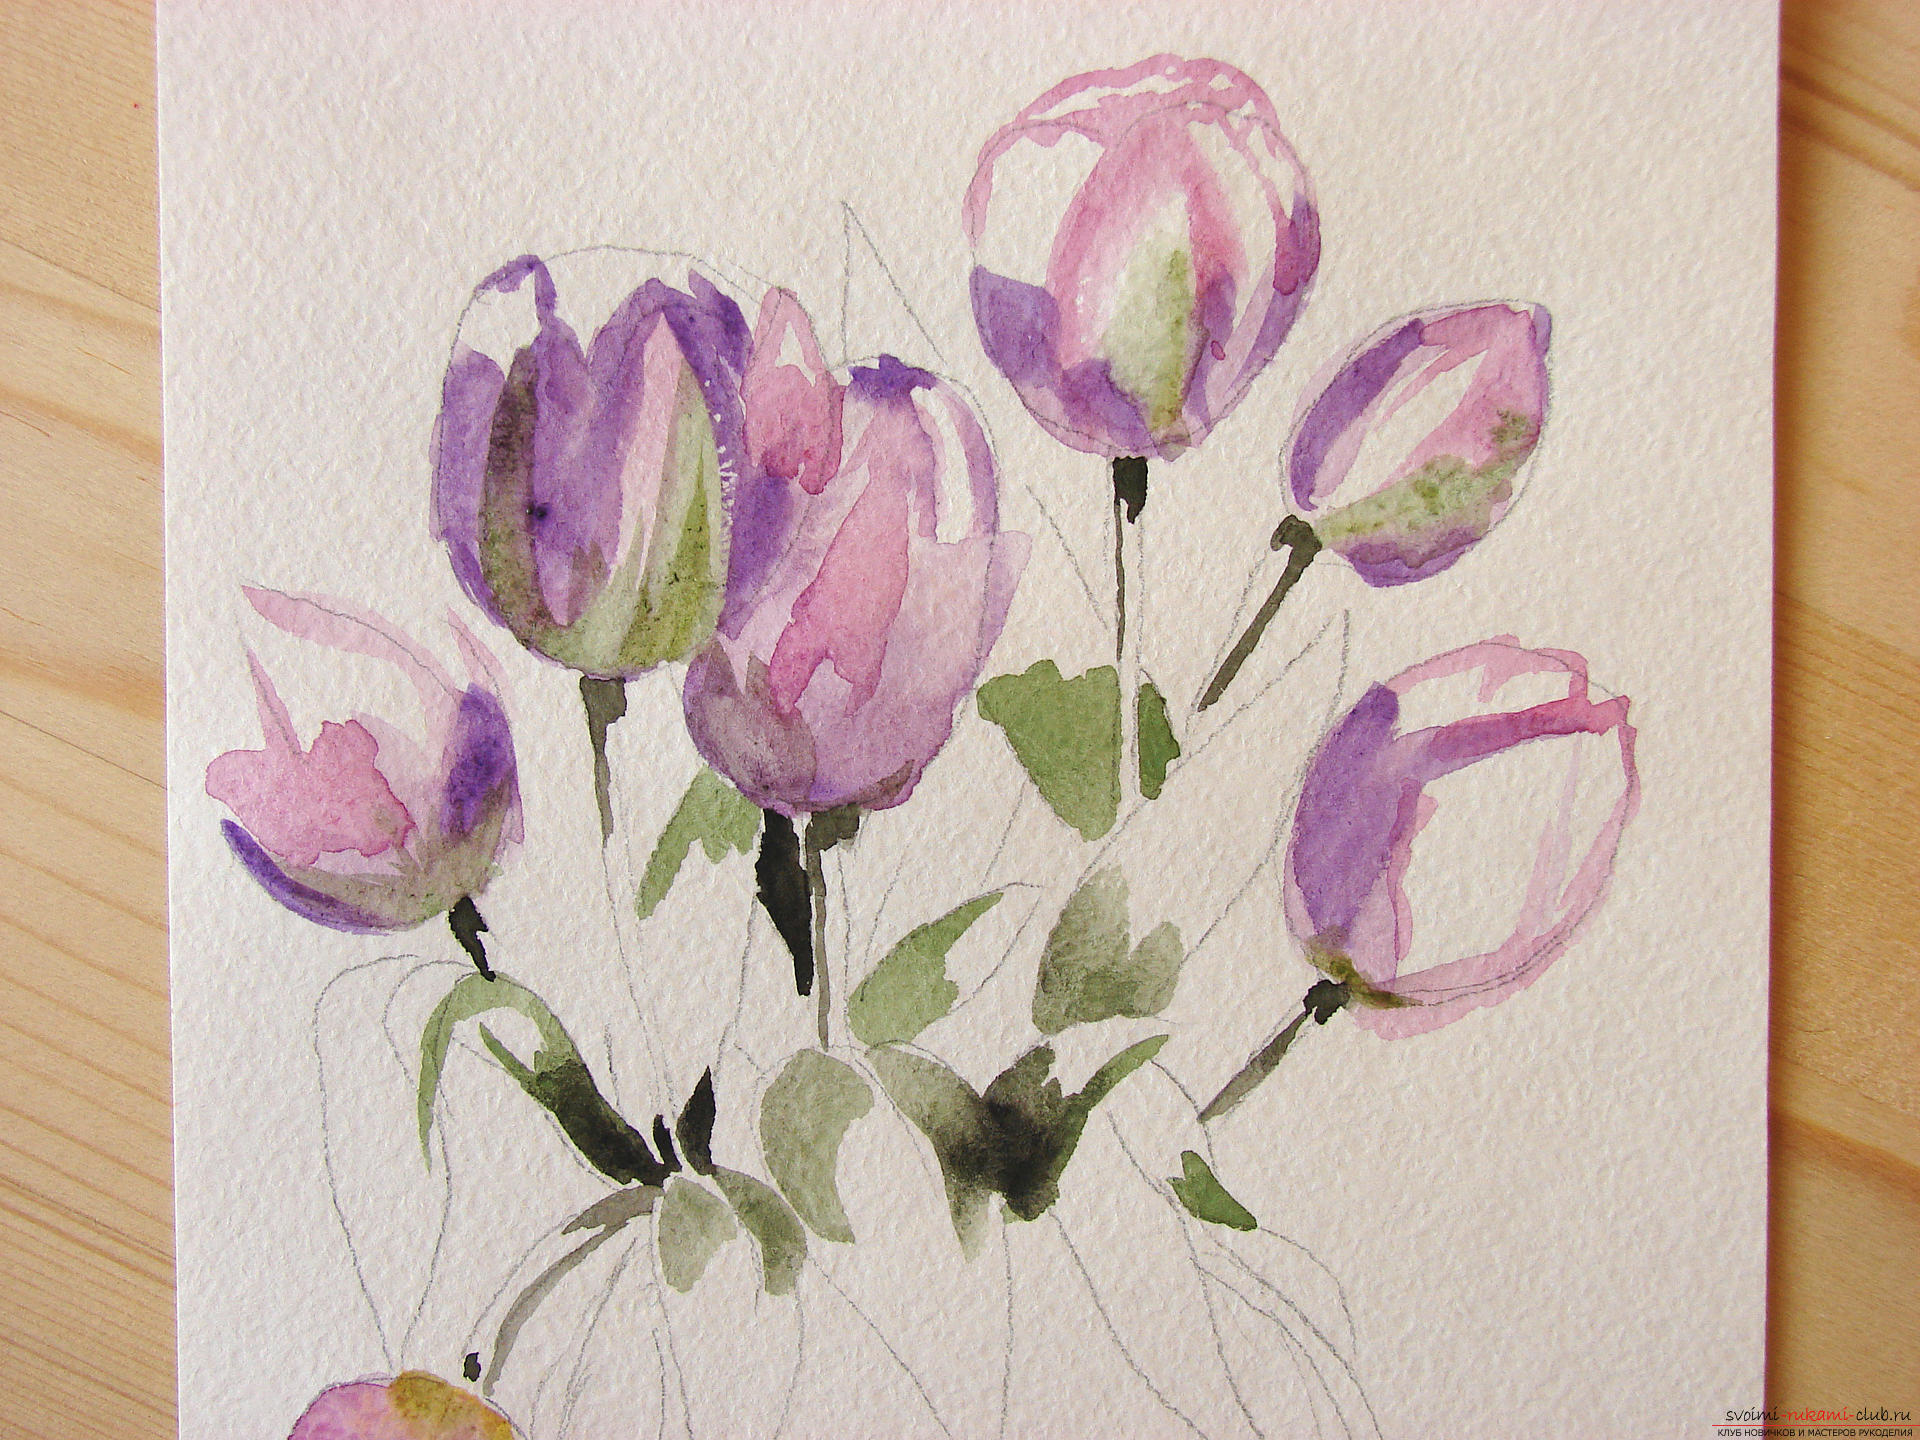 Мастер-класс по рисованию с фото научит как нарисовать цветы, подробно описав как рисуются тюльпаны поэтапно.. Фото №7